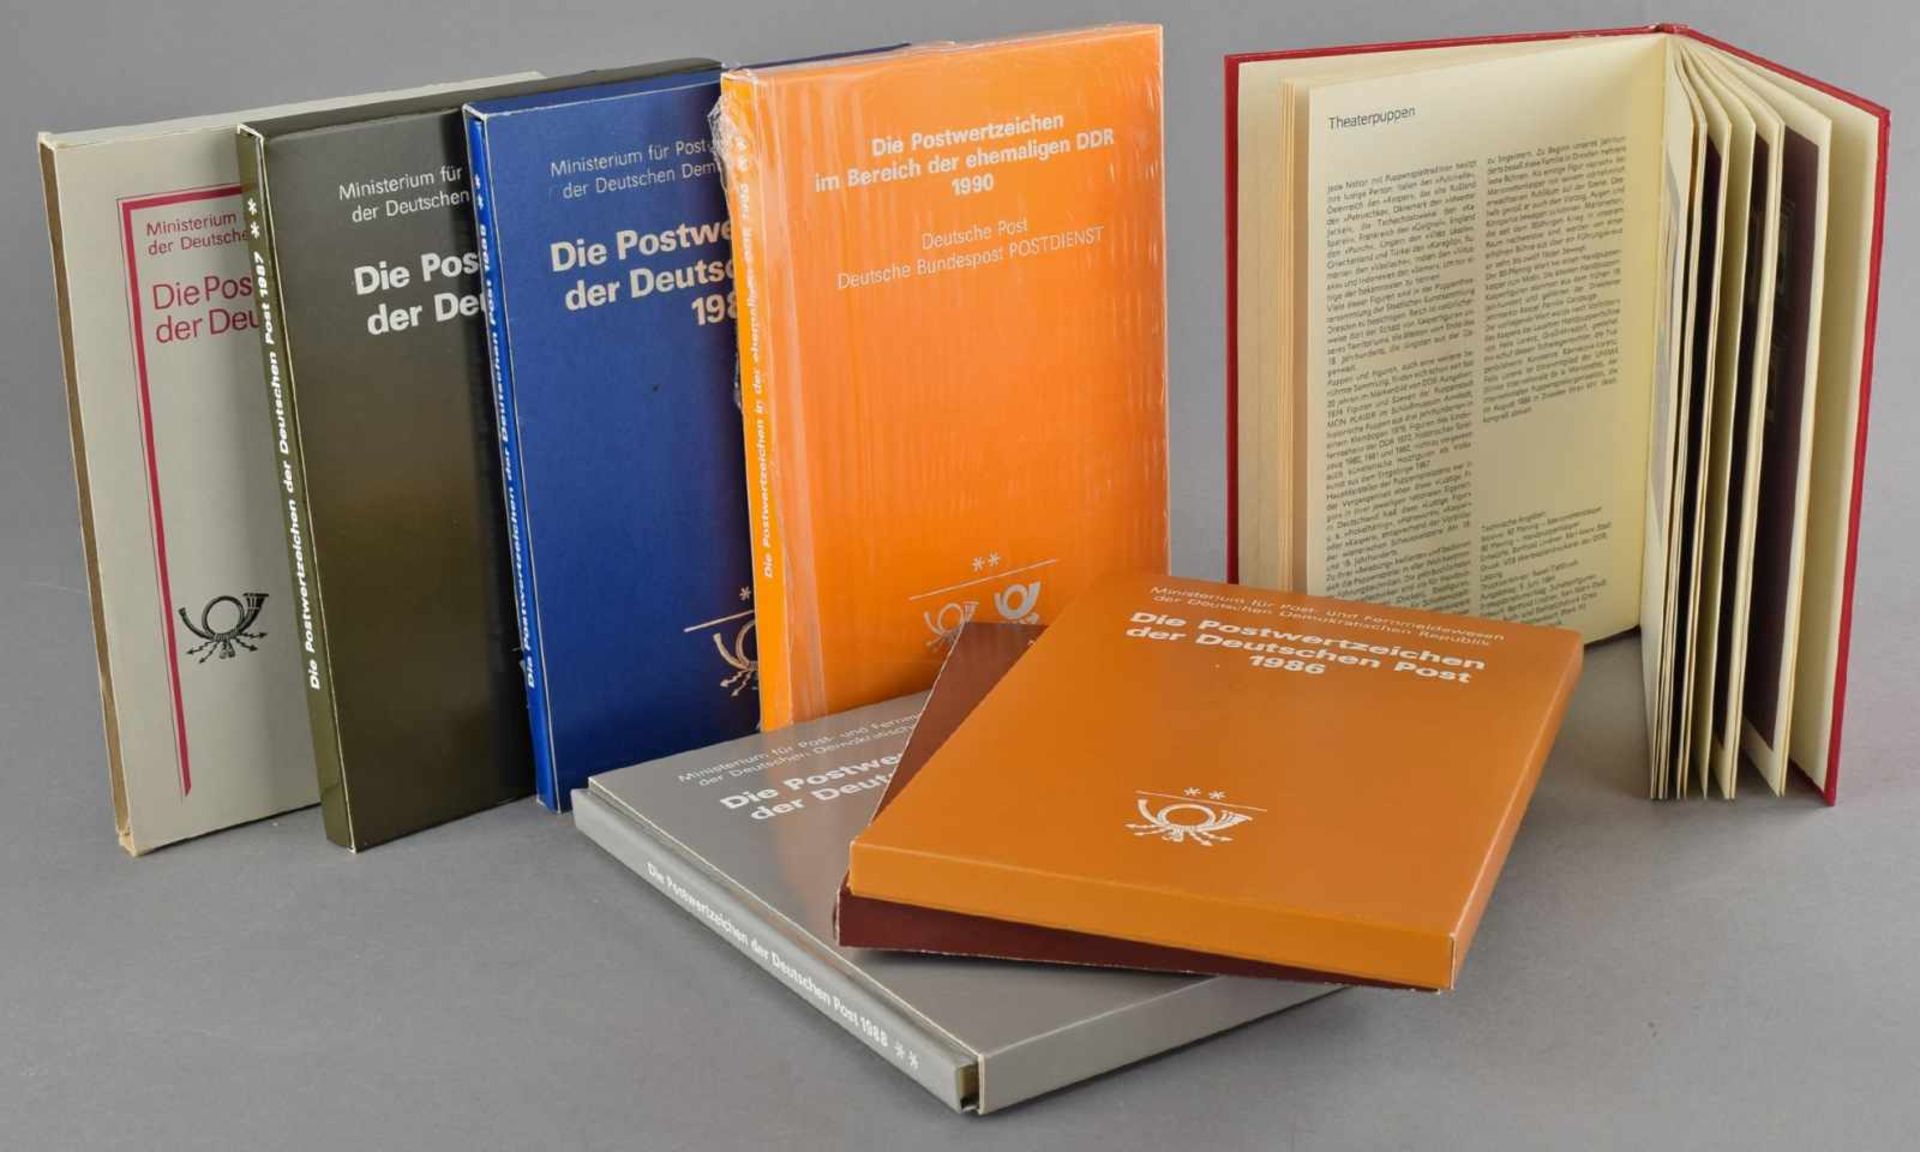 Jahrbücher DDR 1984-1990 alle 7 hrsg. Jahrbücher postfrisch komplett, jew. mit passendem Schuber, - Bild 2 aus 2